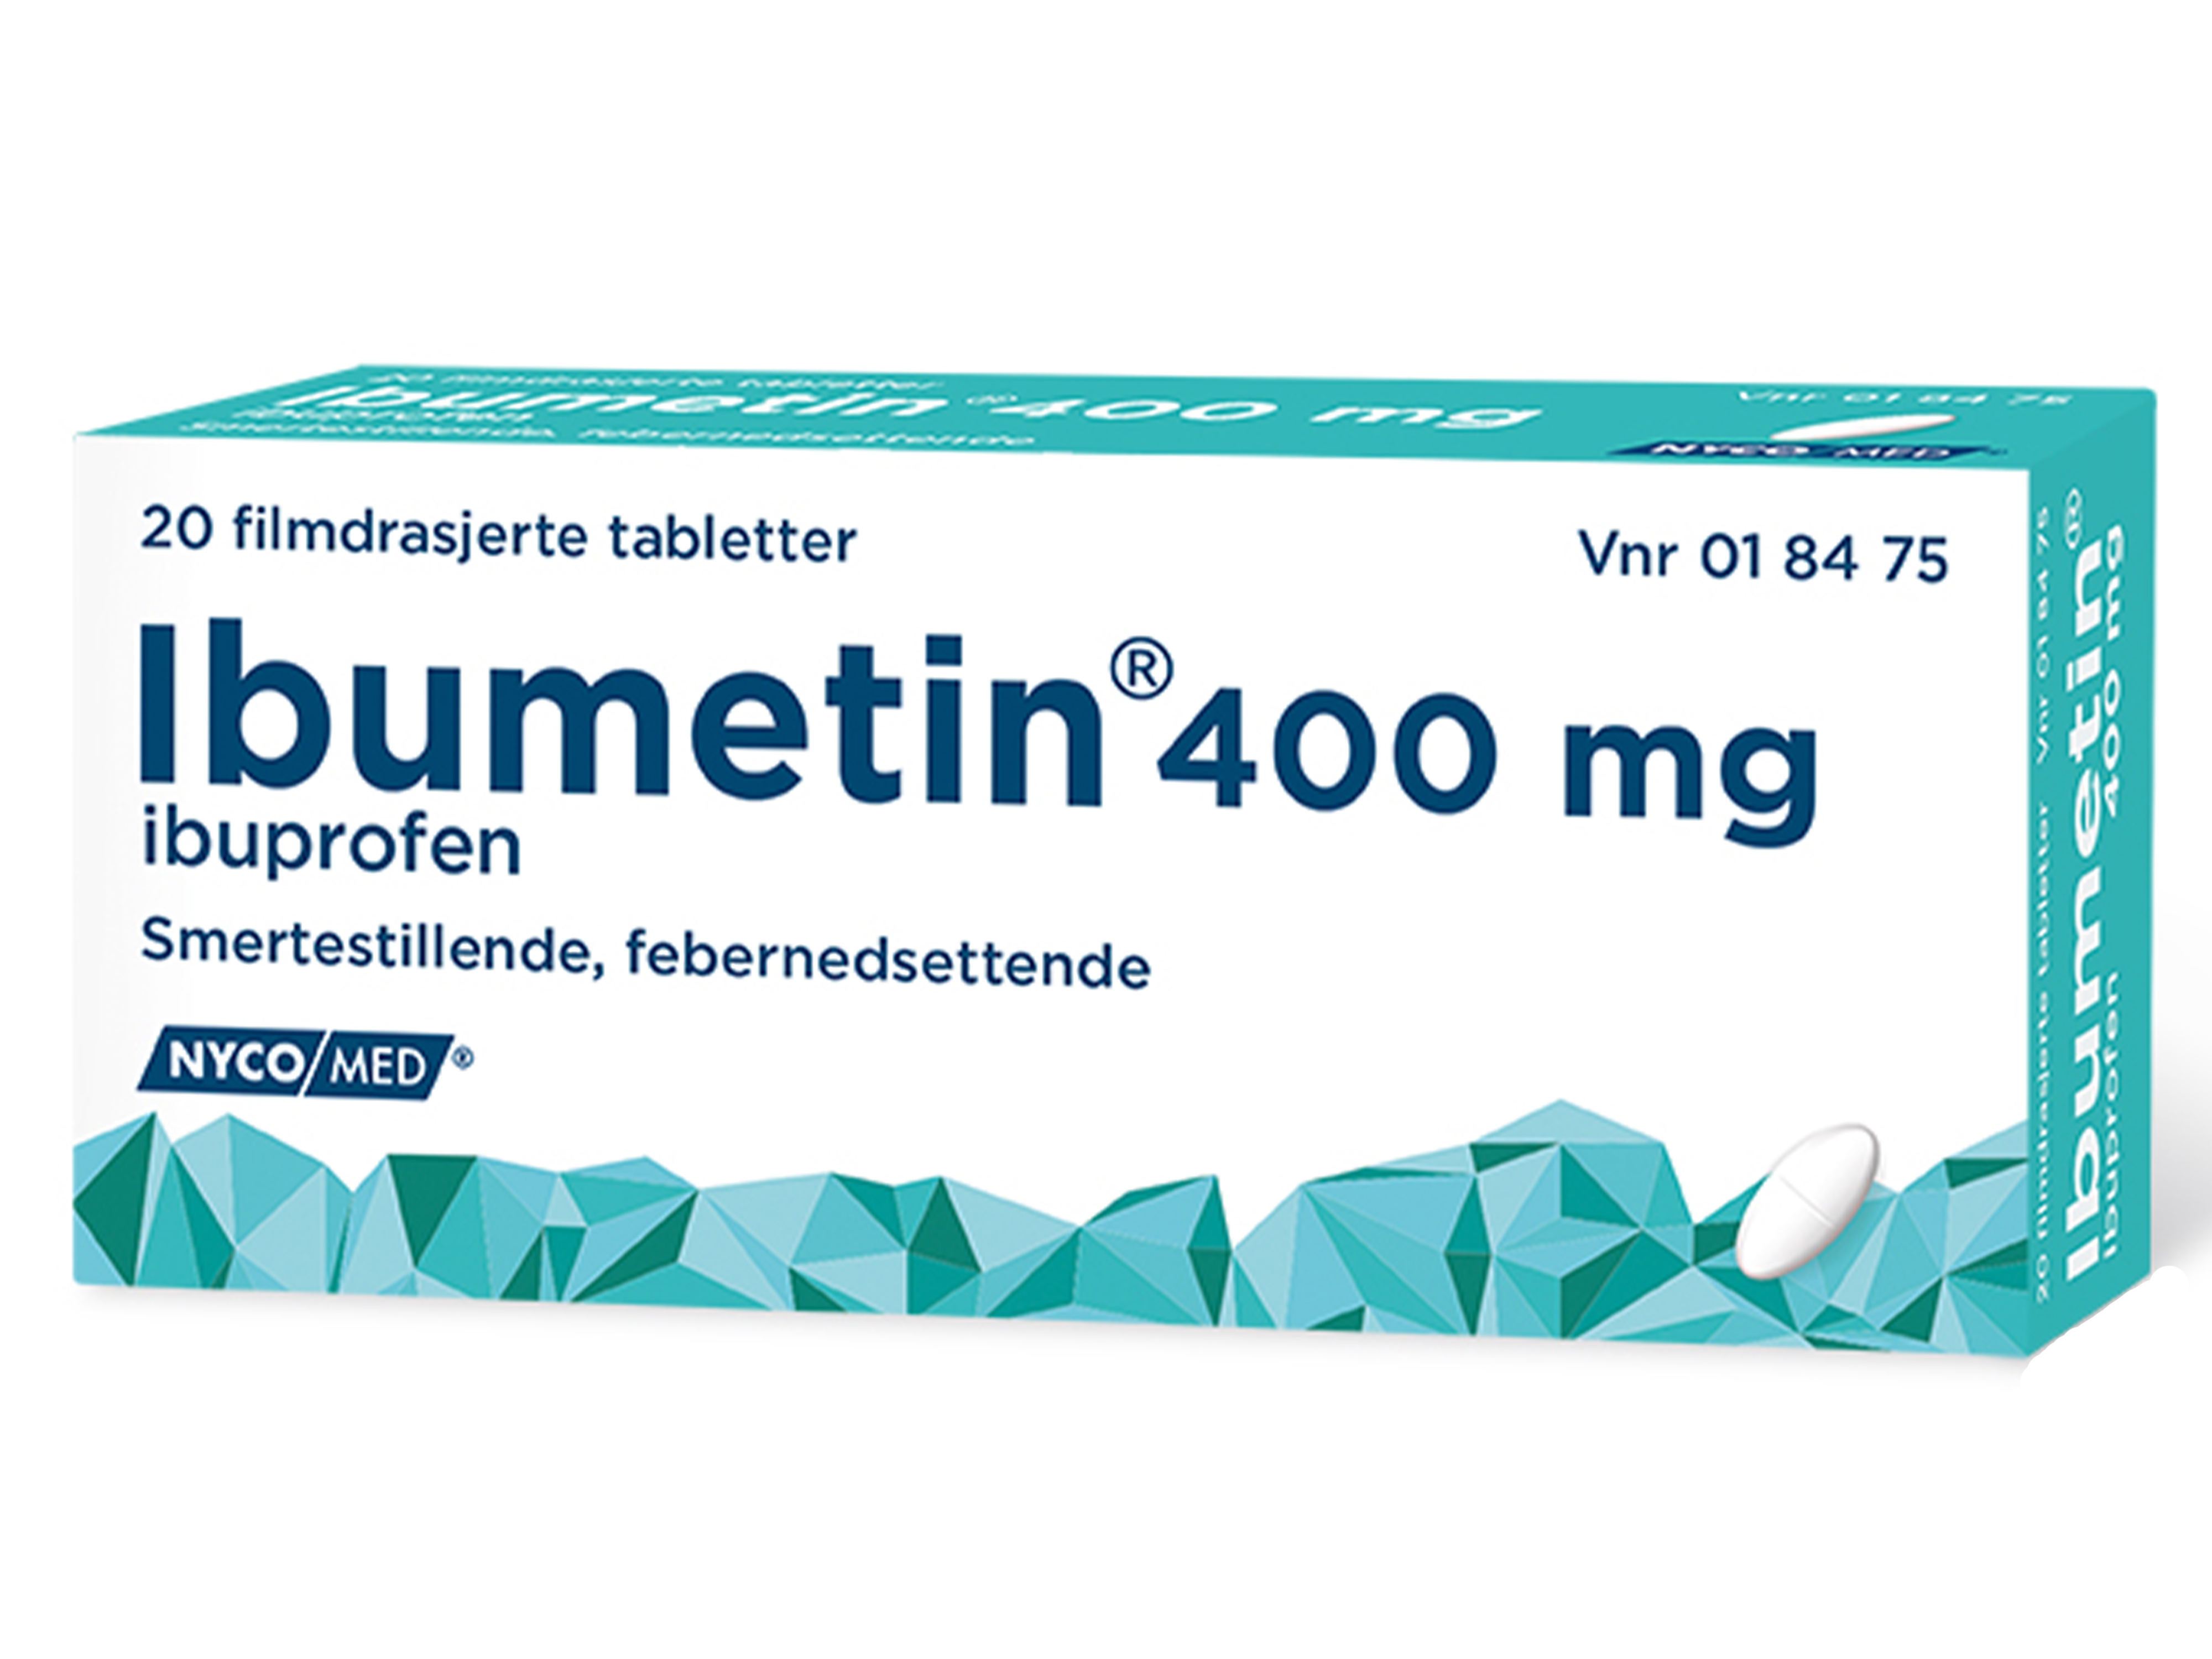 Ibumetin 400 mg tabletter, 20 stk.